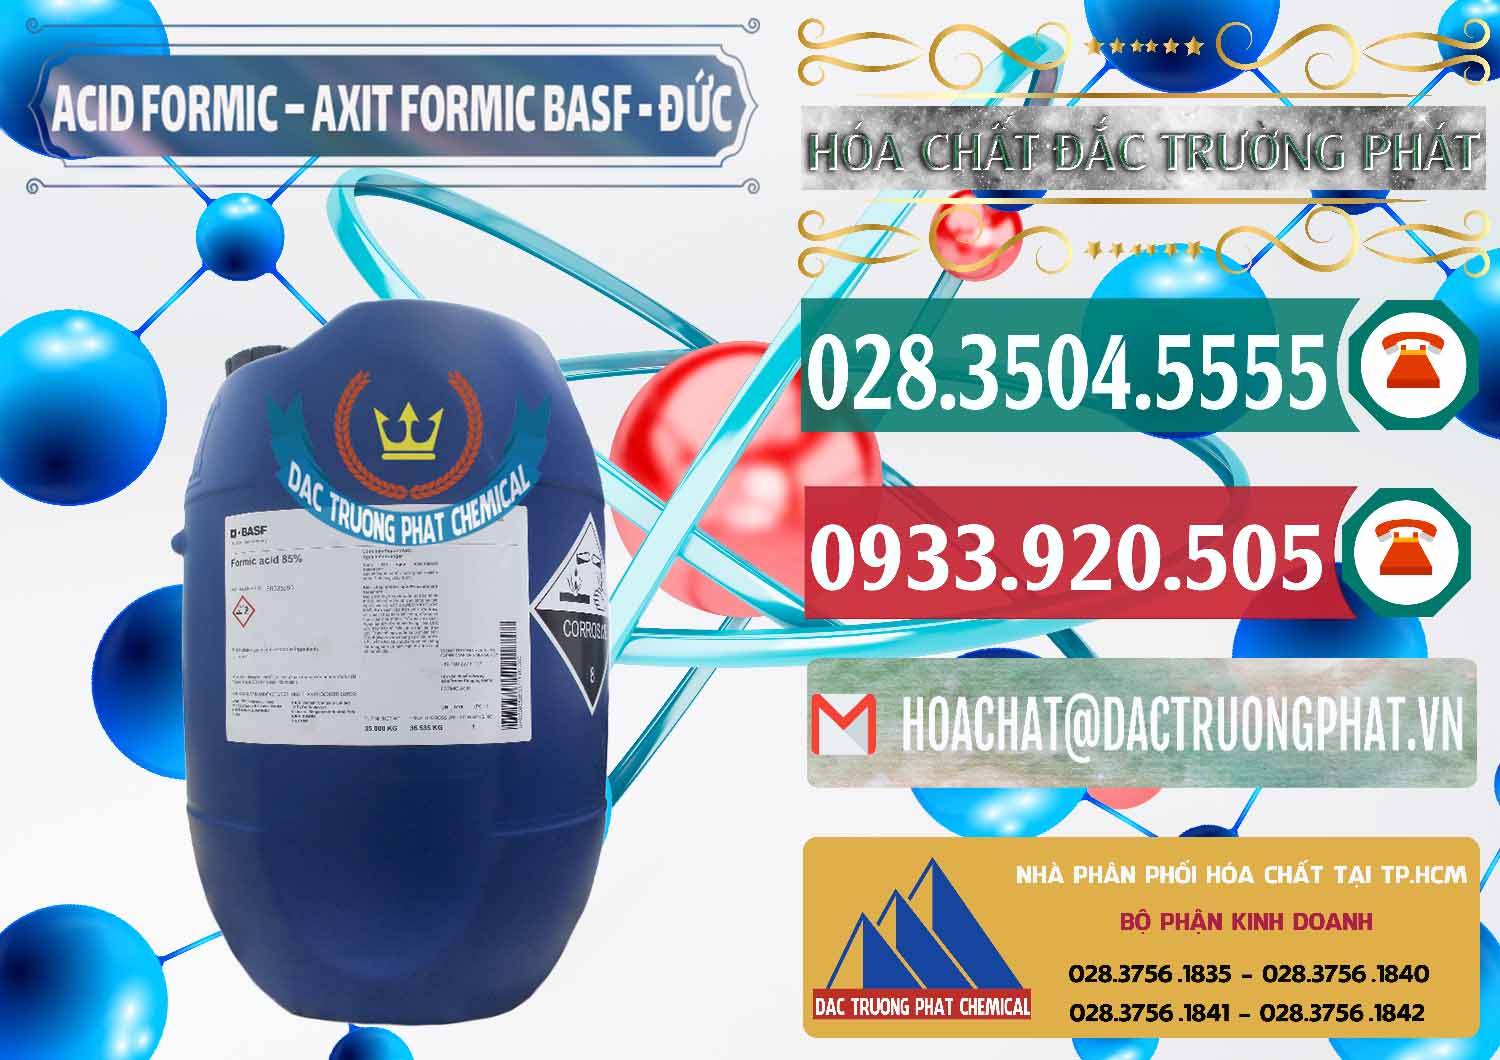 Chuyên bán _ cung cấp Acid Formic - Axit Formic BASF Đức Germany - 0028 - Nơi chuyên phân phối và bán hóa chất tại TP.HCM - muabanhoachat.vn